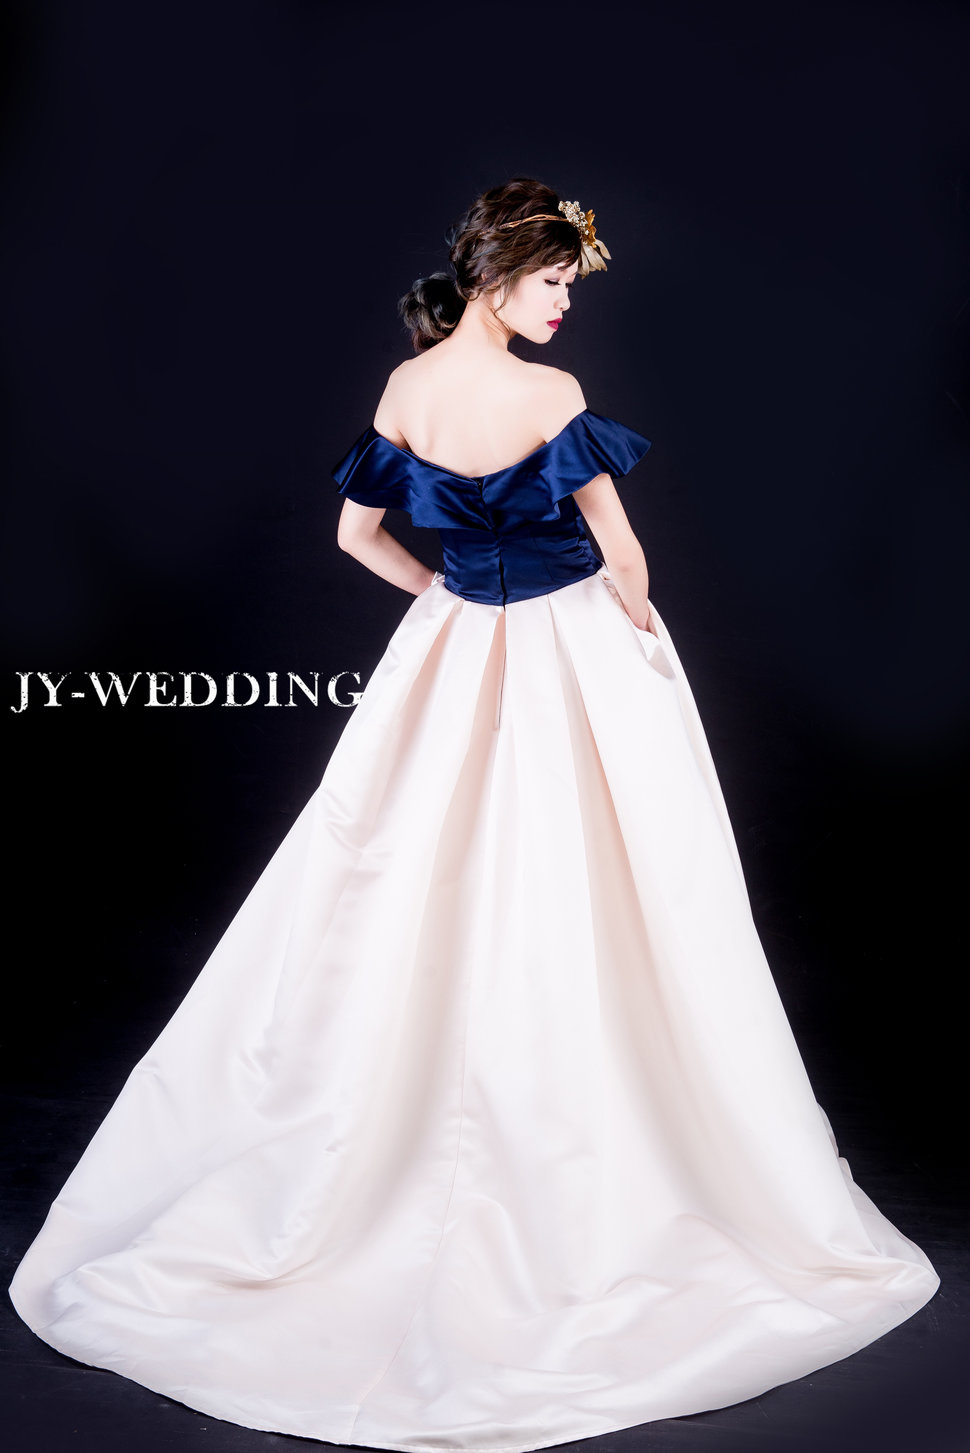 075 - 京宴婚紗JY-WEDDING《結婚吧》